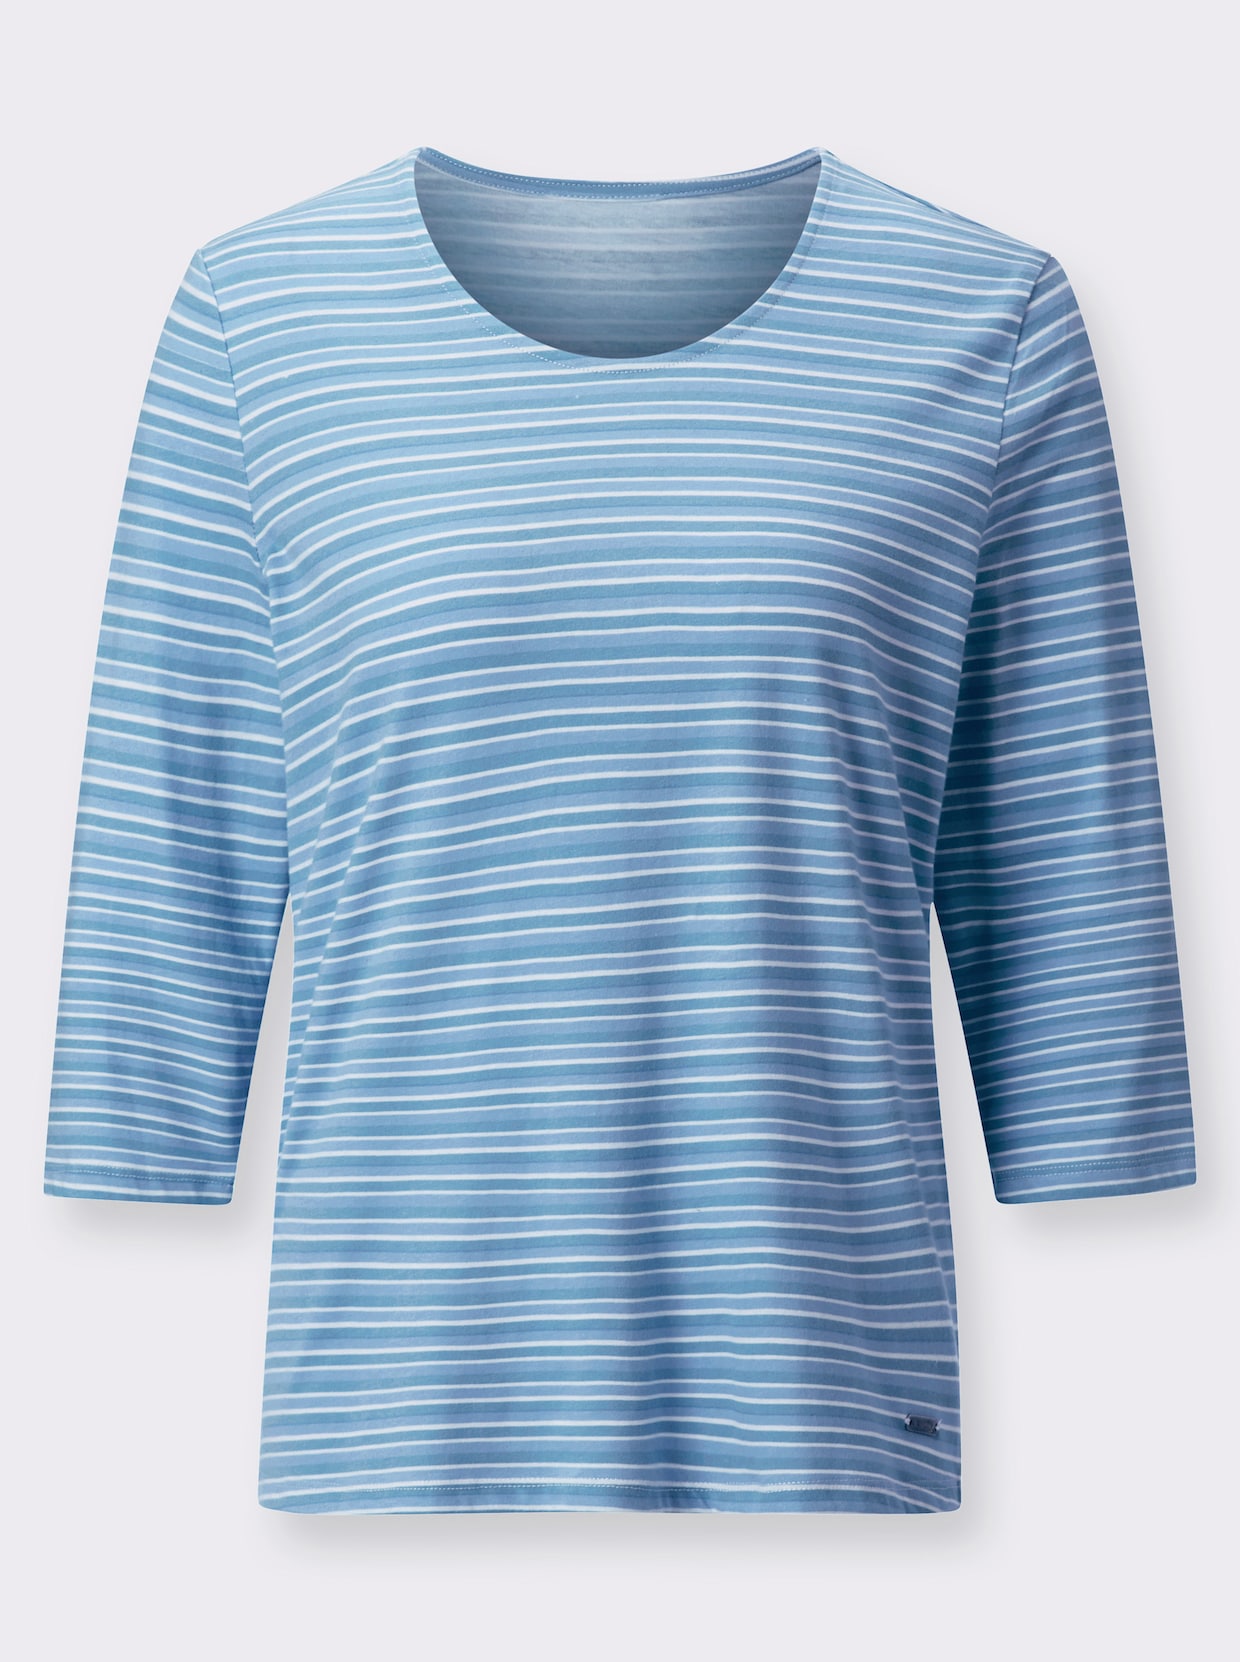 Pruhované tričko - Stredne modré pruhovanie